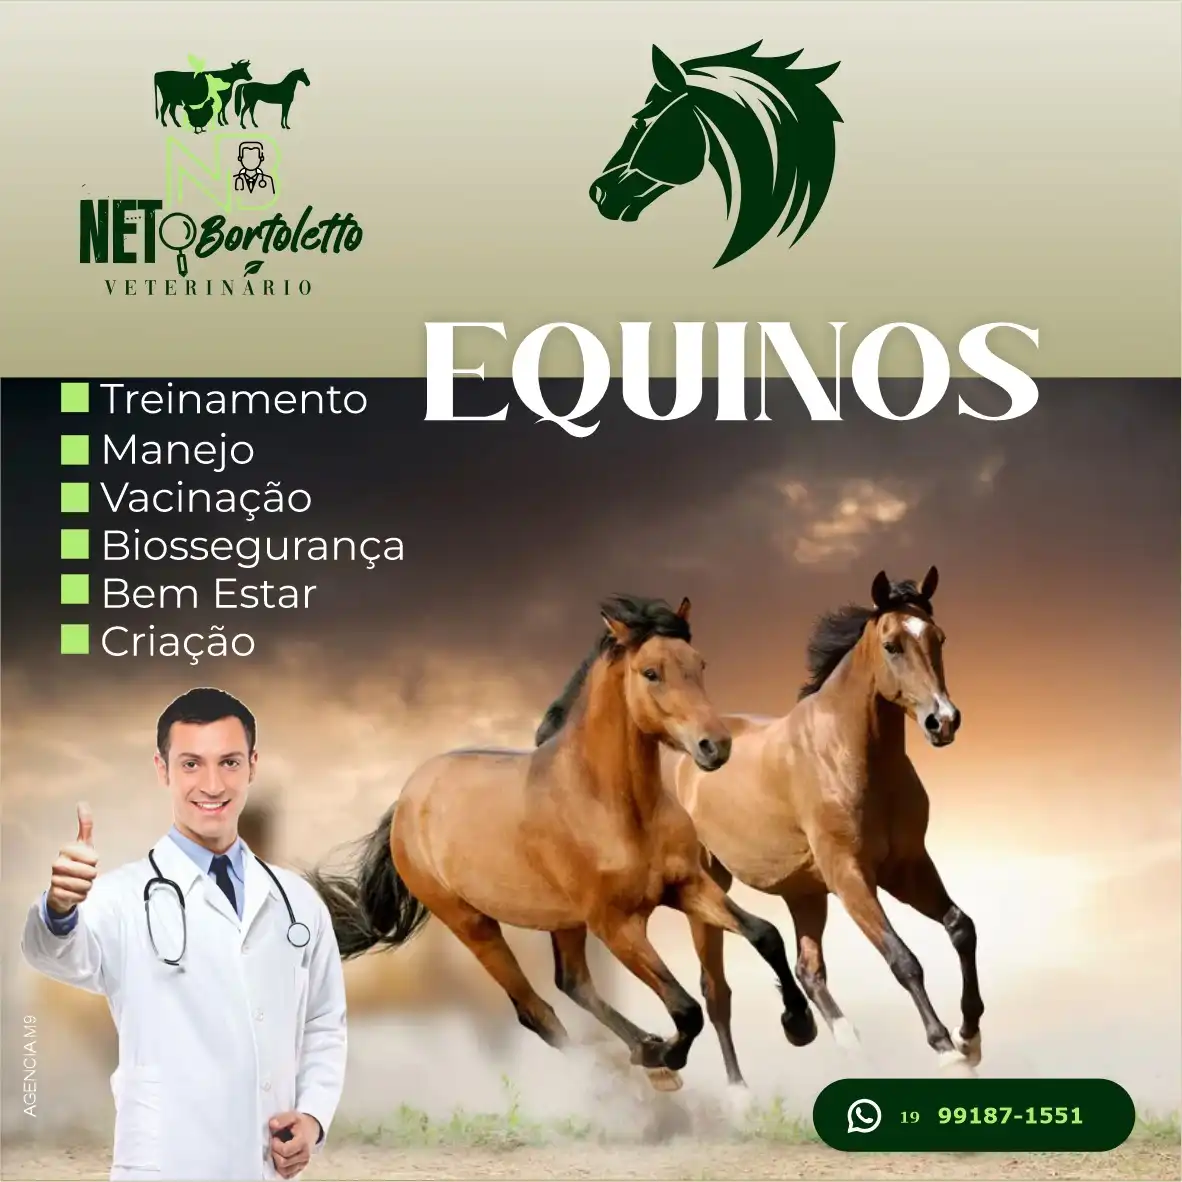 
Propaganda Post Veterinário de Equinos Cavalos



